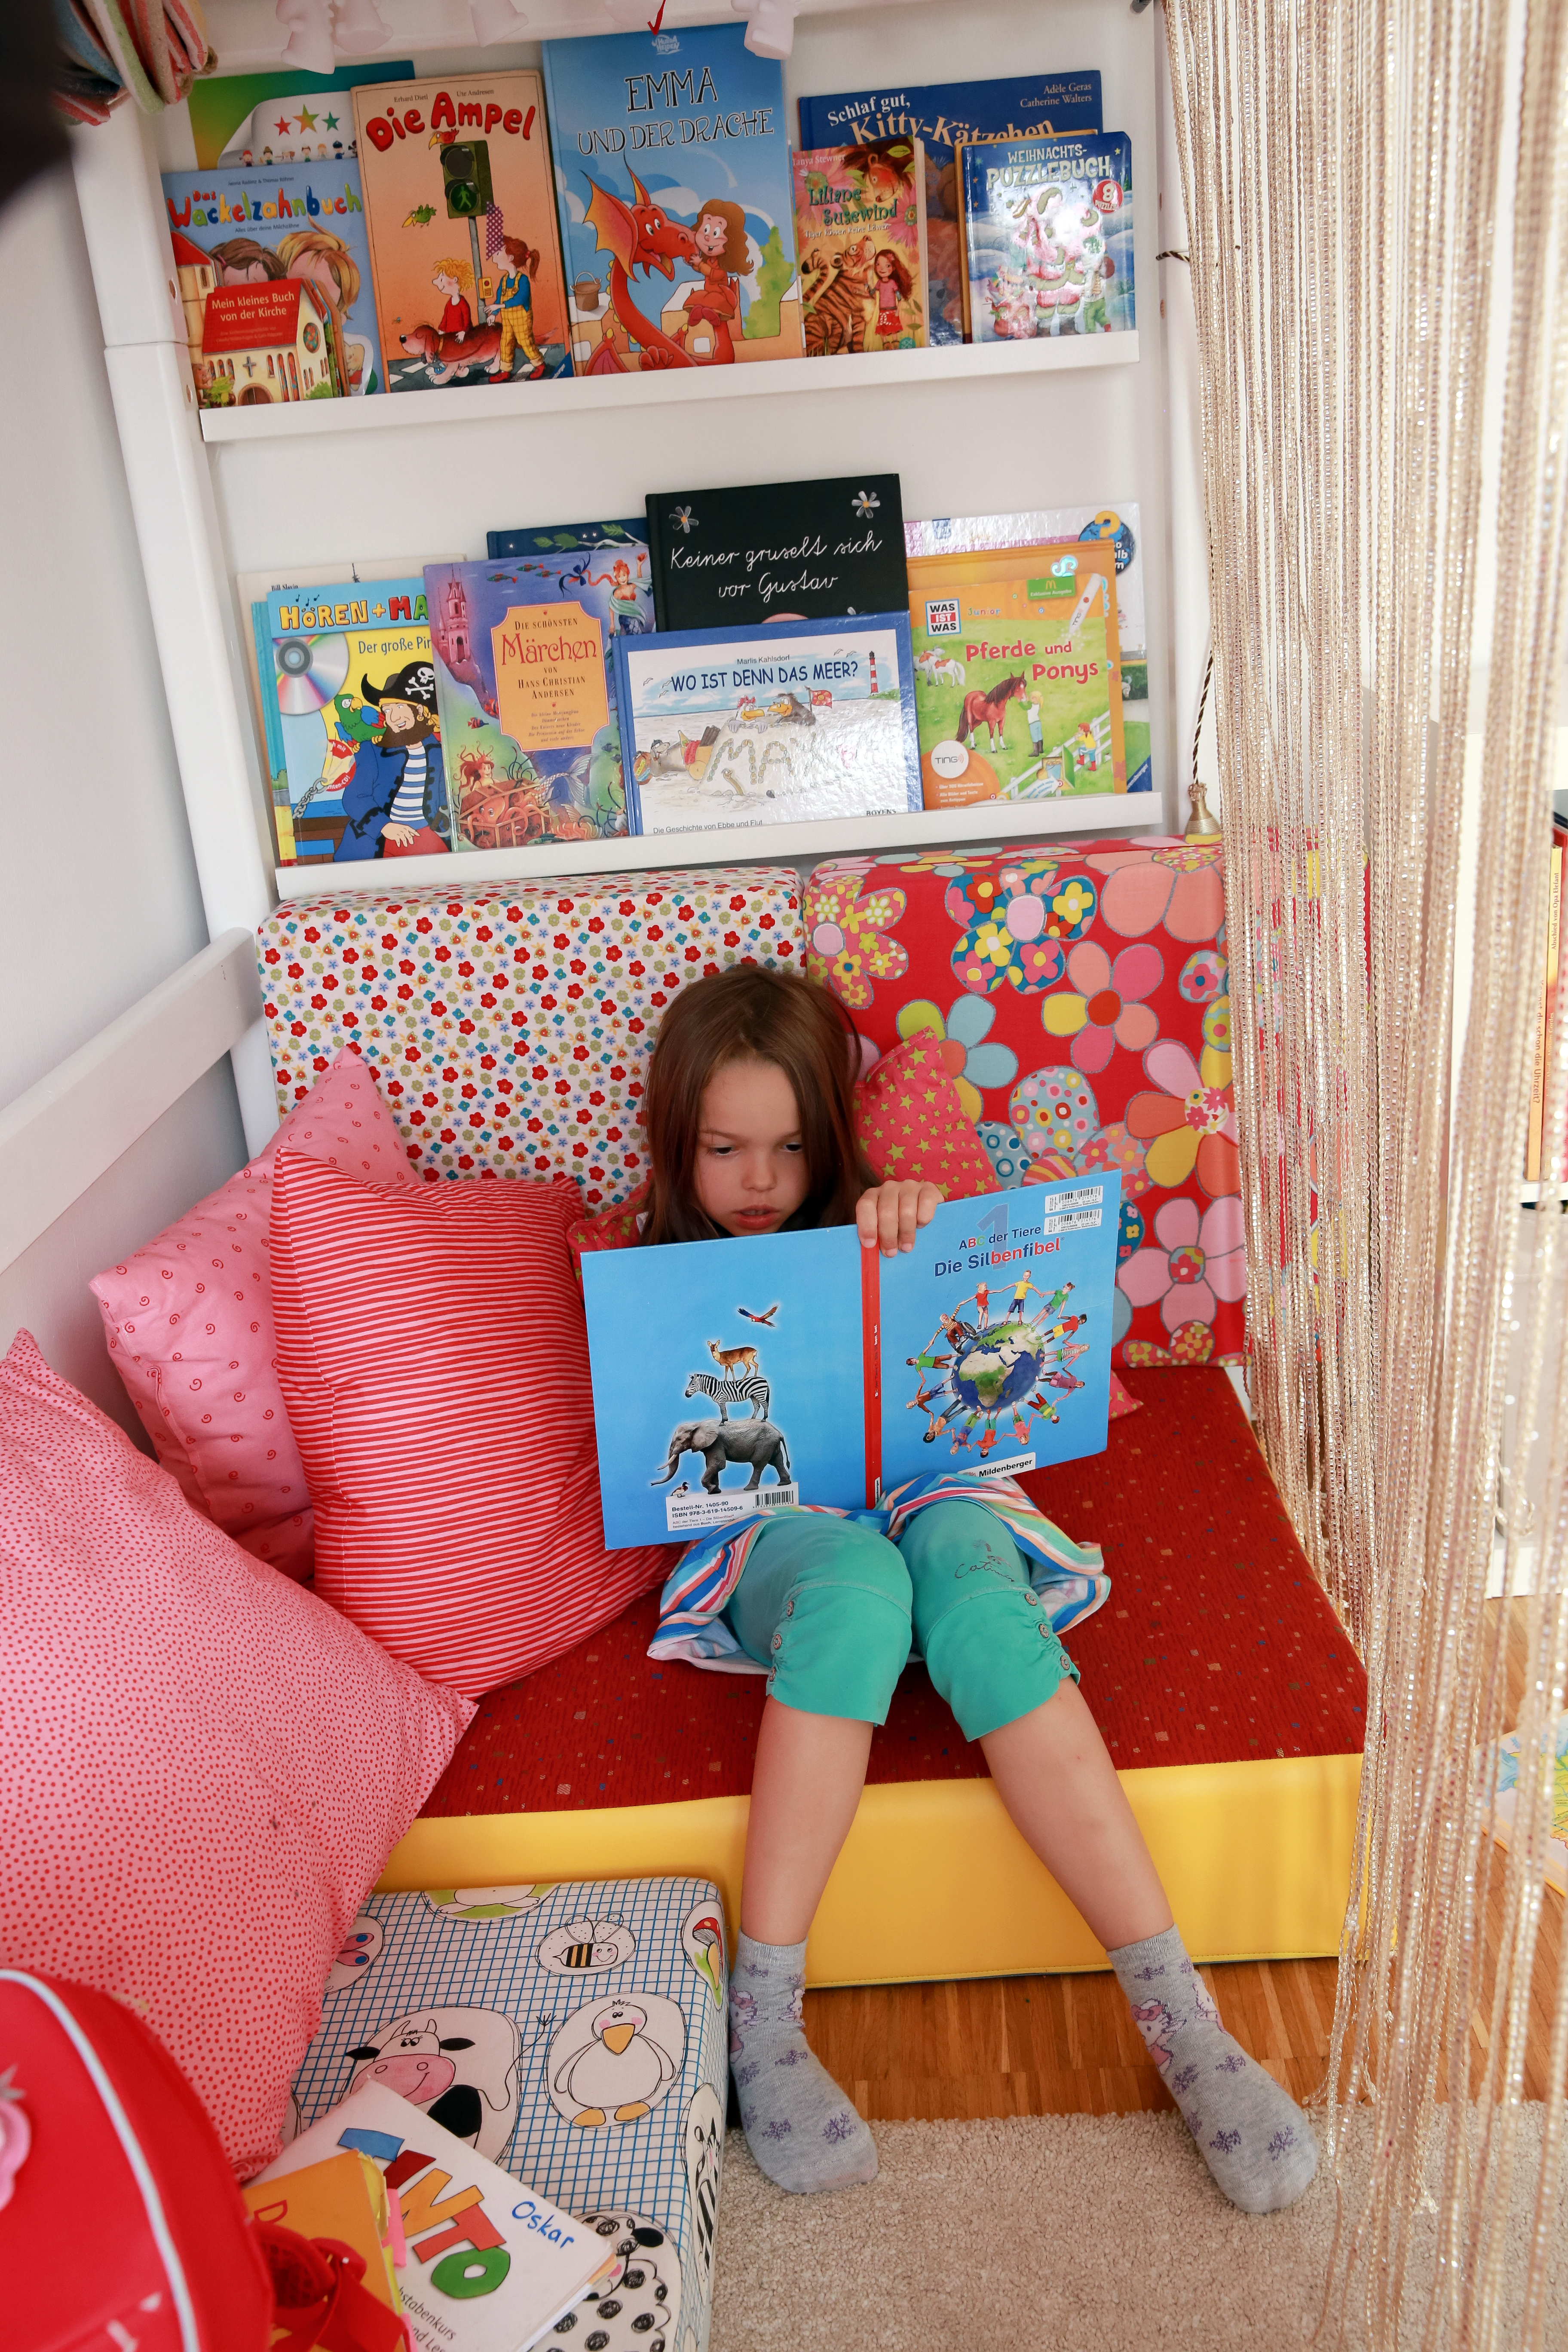 Colores y espejos: algunos trucos para ampliar el cuarto de los niños